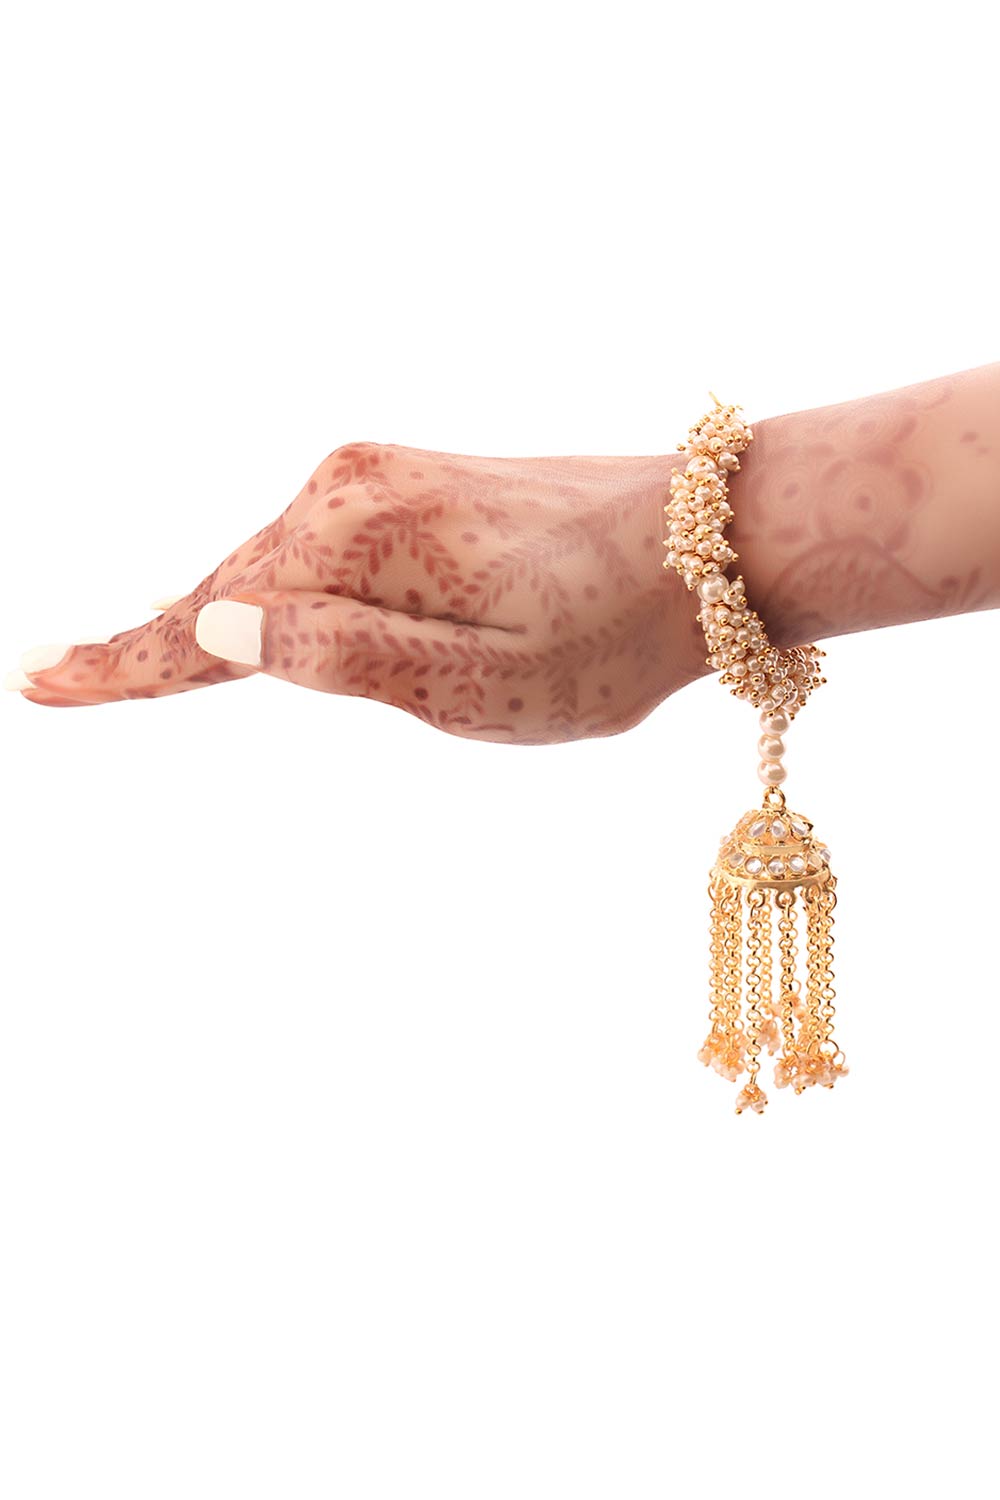 Buy Women's Alloy Bracelets in Gold - Front